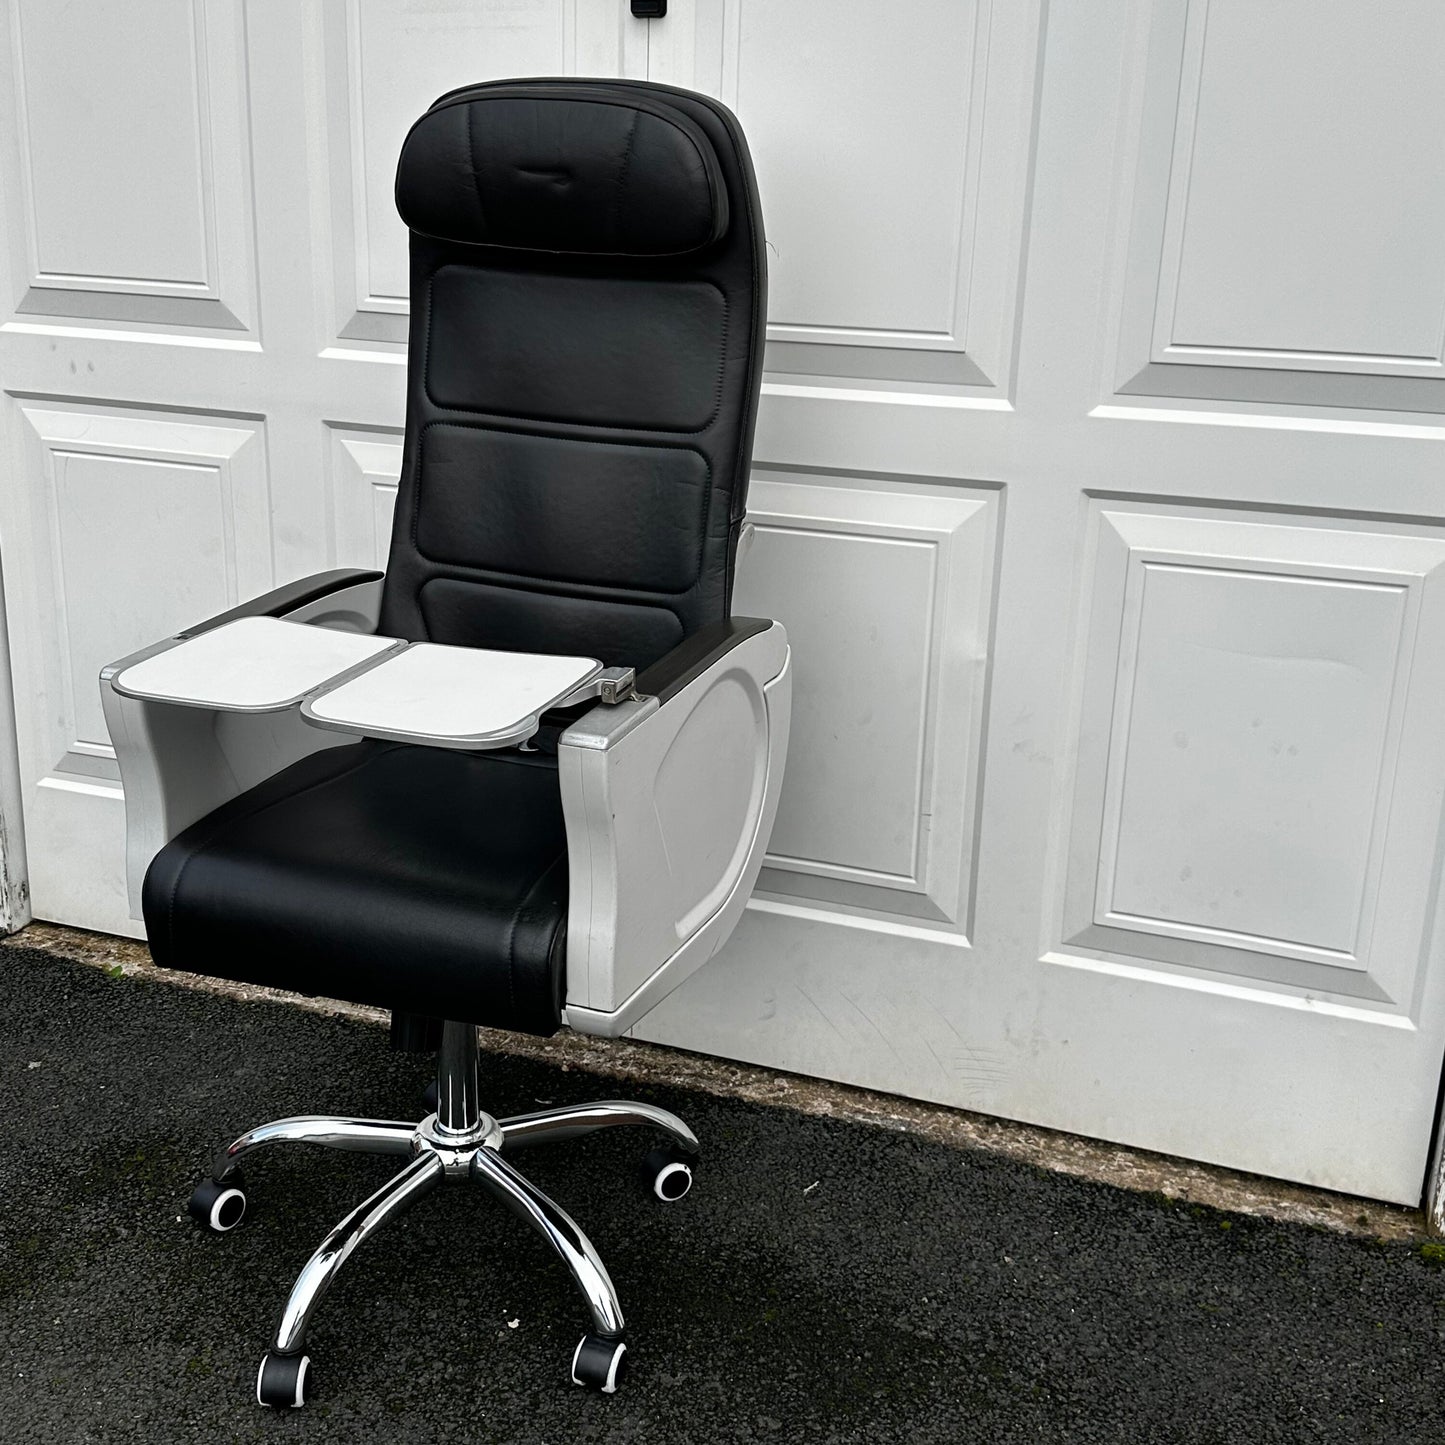 British Airways Premium Economy Club Europe Upcycled Office Desk Chair Speedbird concorde